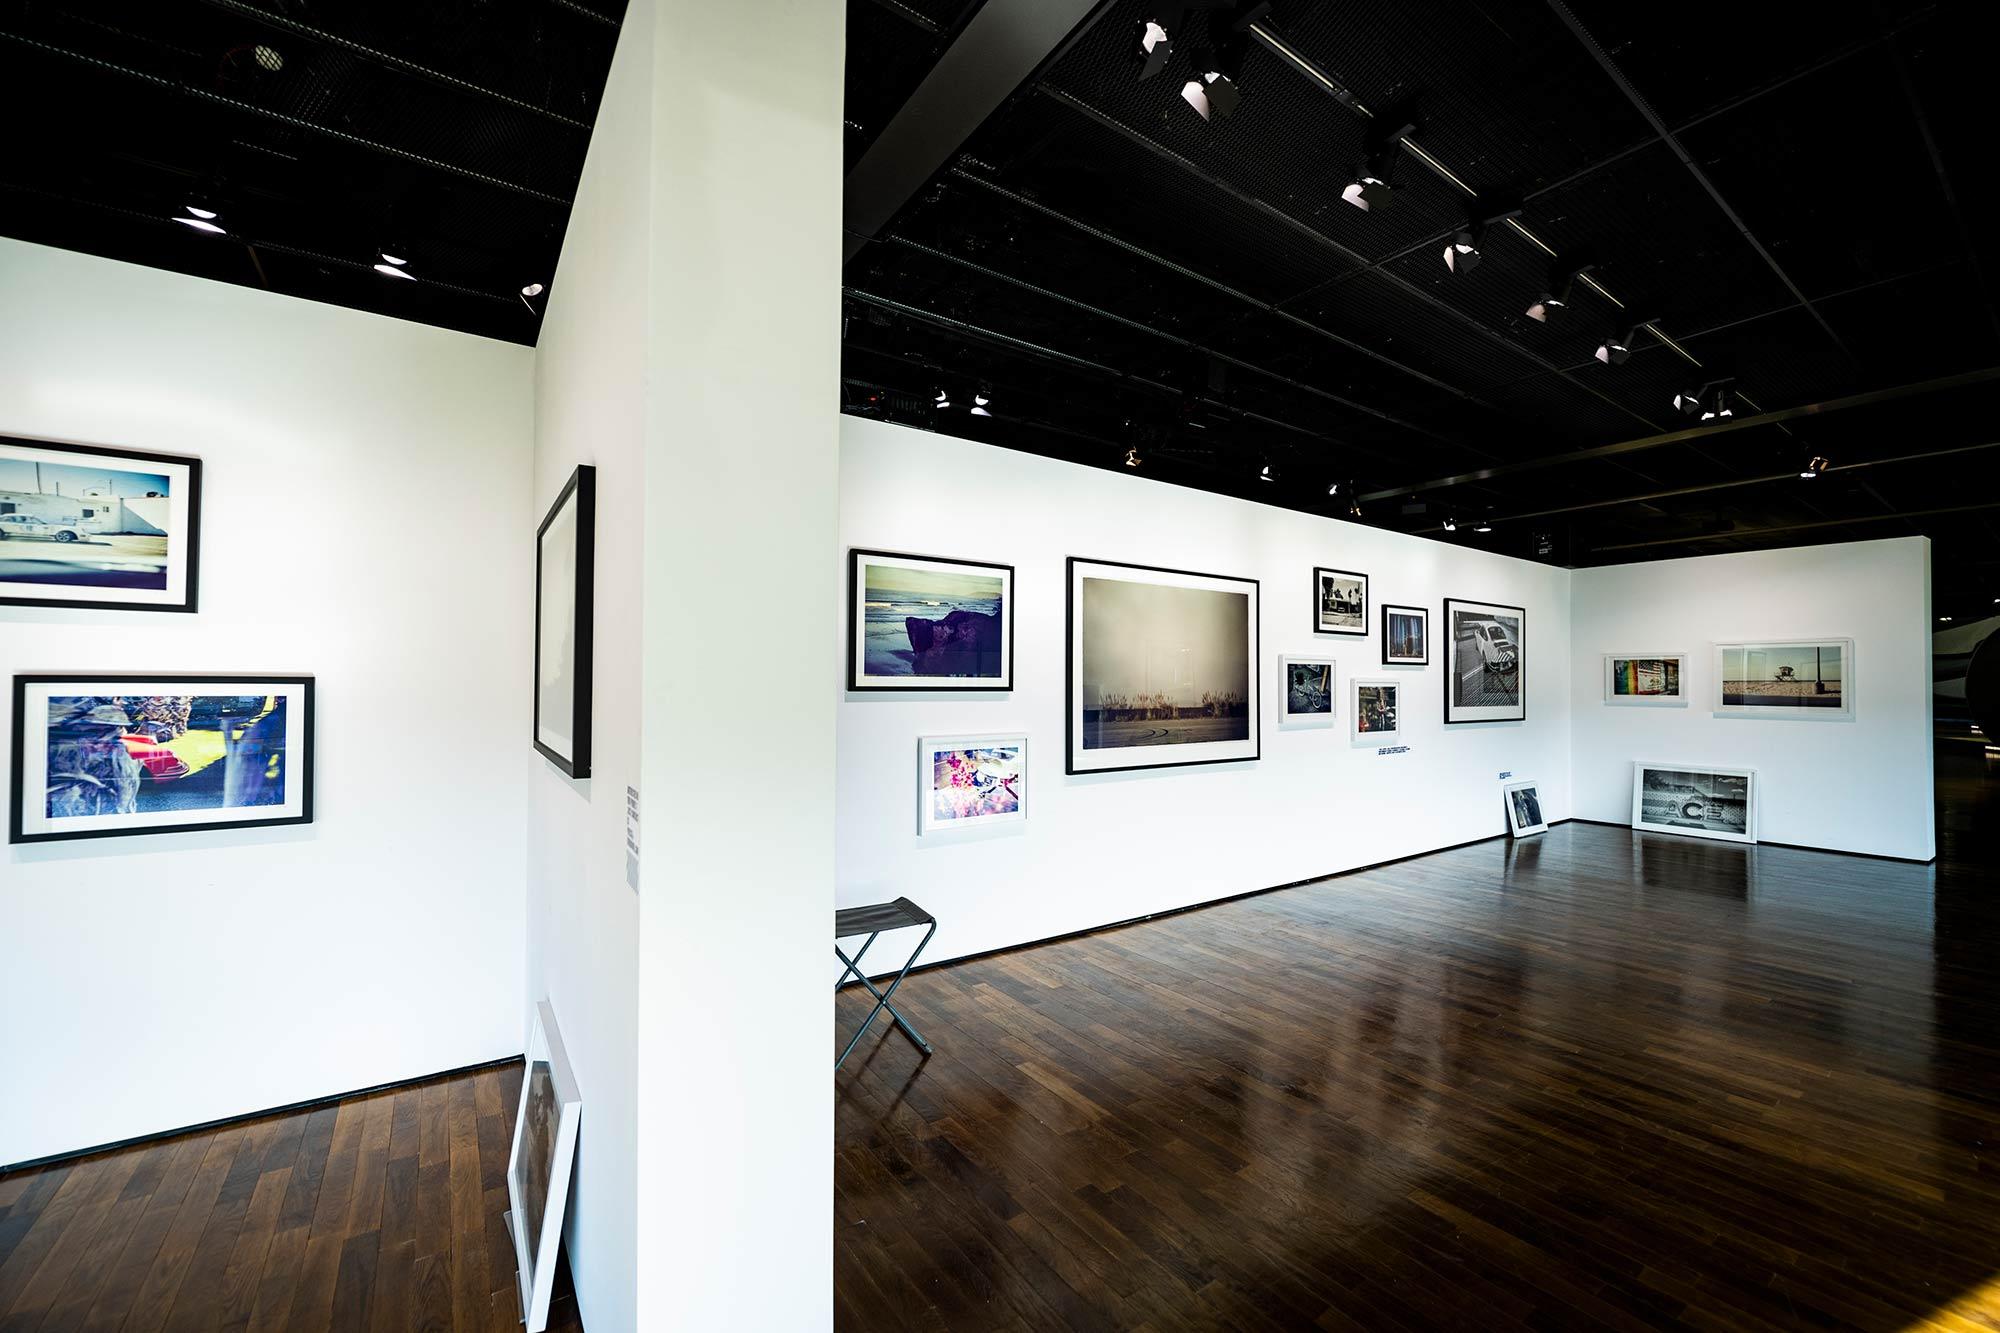 Fotografie in einen Ausstellungsraum. Zu sehen sind weiße Wände, an denen gerahmte Fotografien hängen und lehnen.